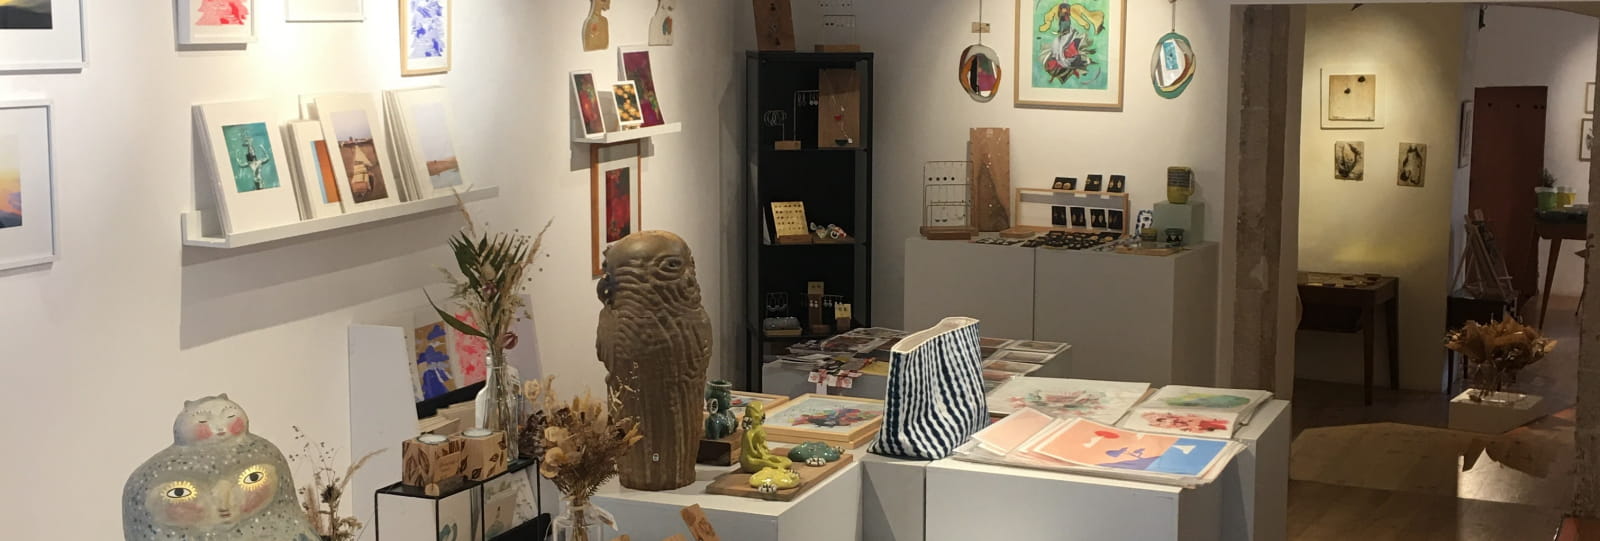 Galerie craft espace